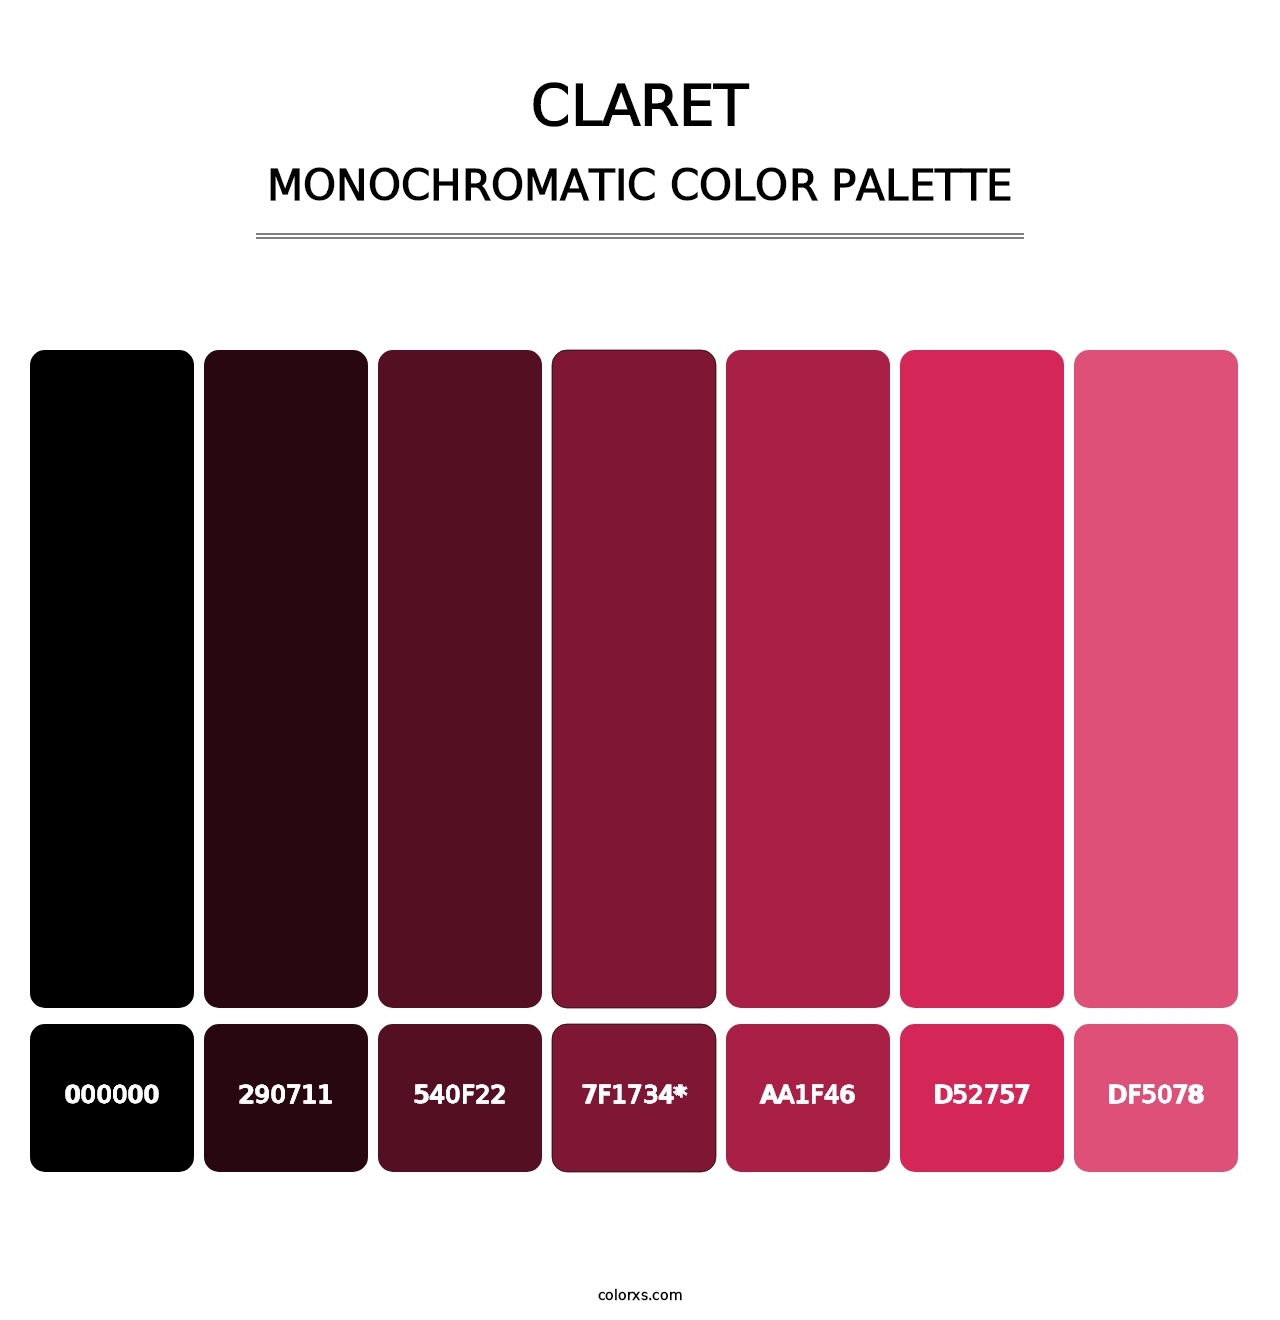 Claret - Monochromatic Color Palette